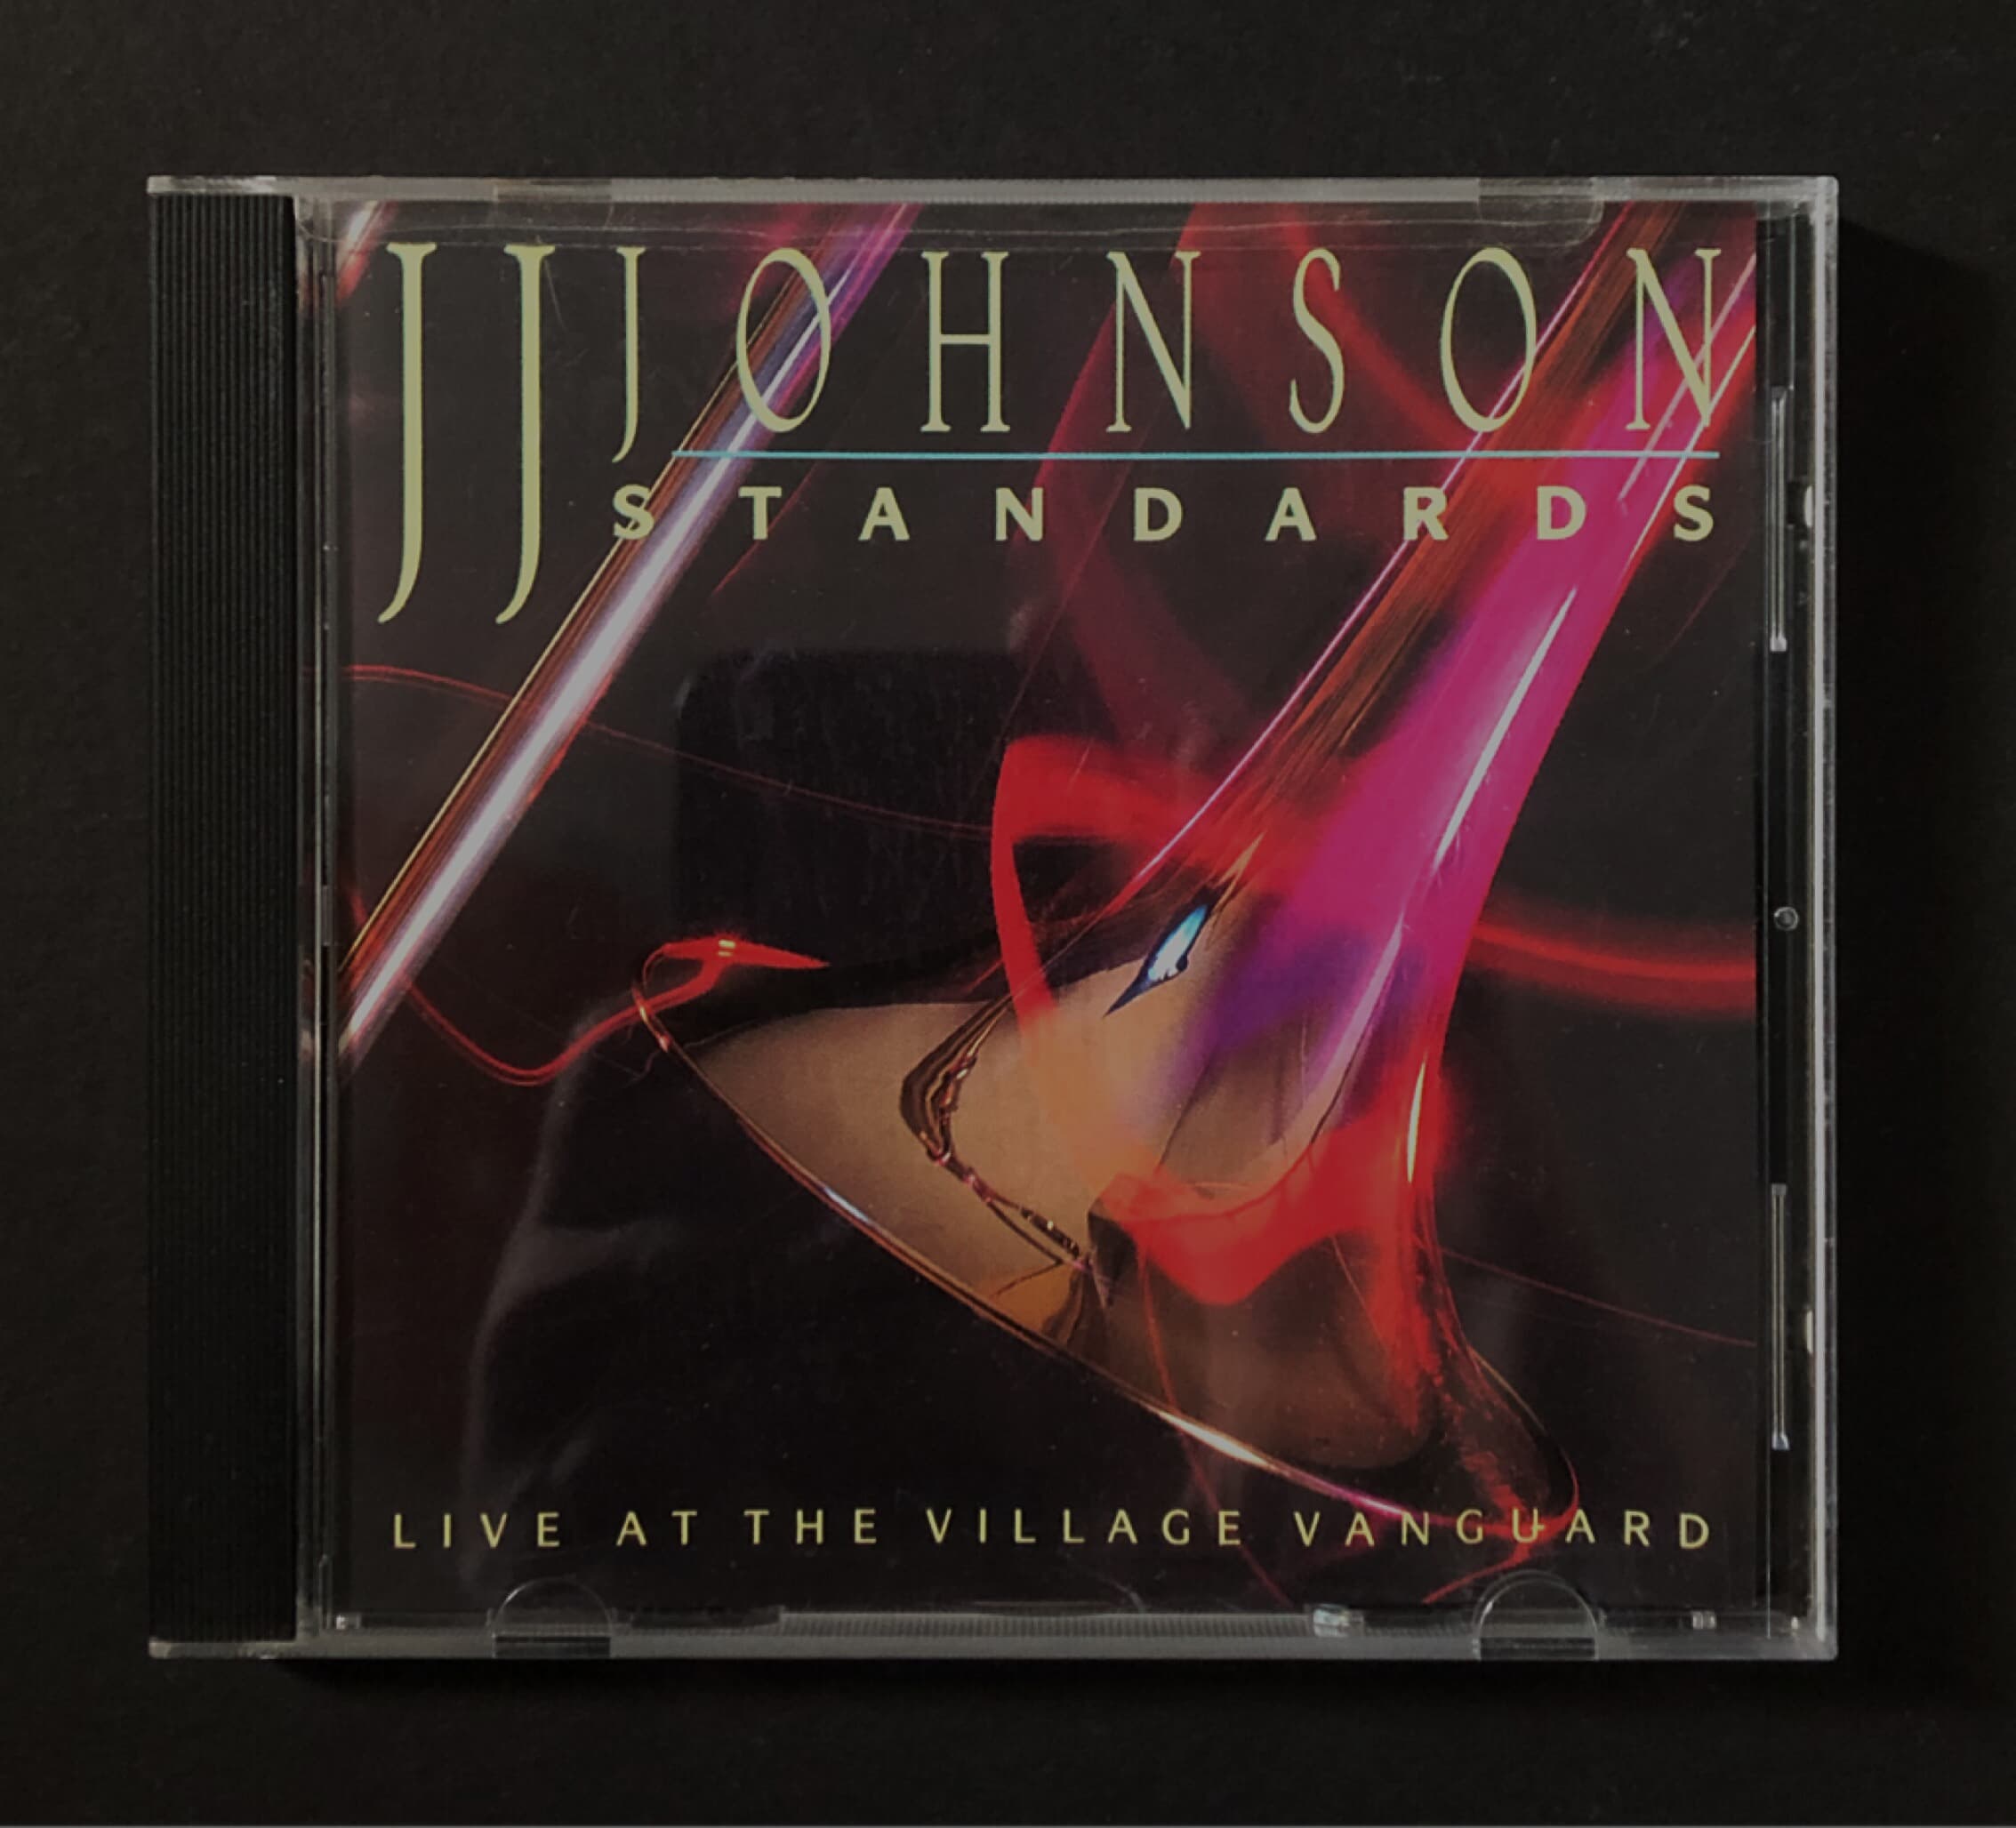 [CD] 수입반 JJ JOHNSON - STANDARDS (US발매)